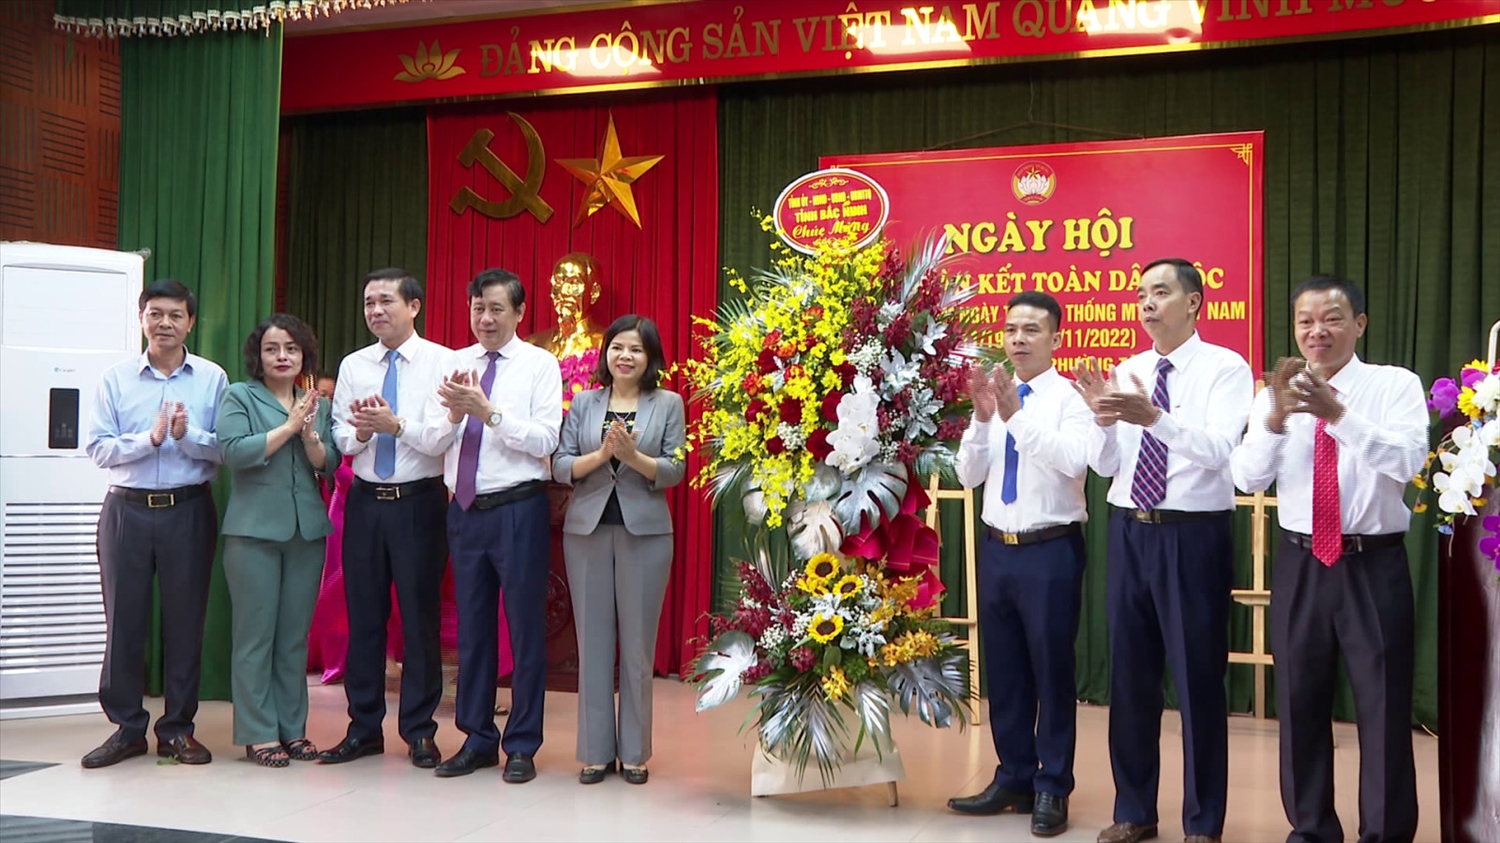 Chủ tịch UBND tỉnh trao lẵng hoa chúc mừng Ngày hội Đại đoàn kết toàn dân tộc tại khu phố Đại Đình, Tp. Từ Sơn